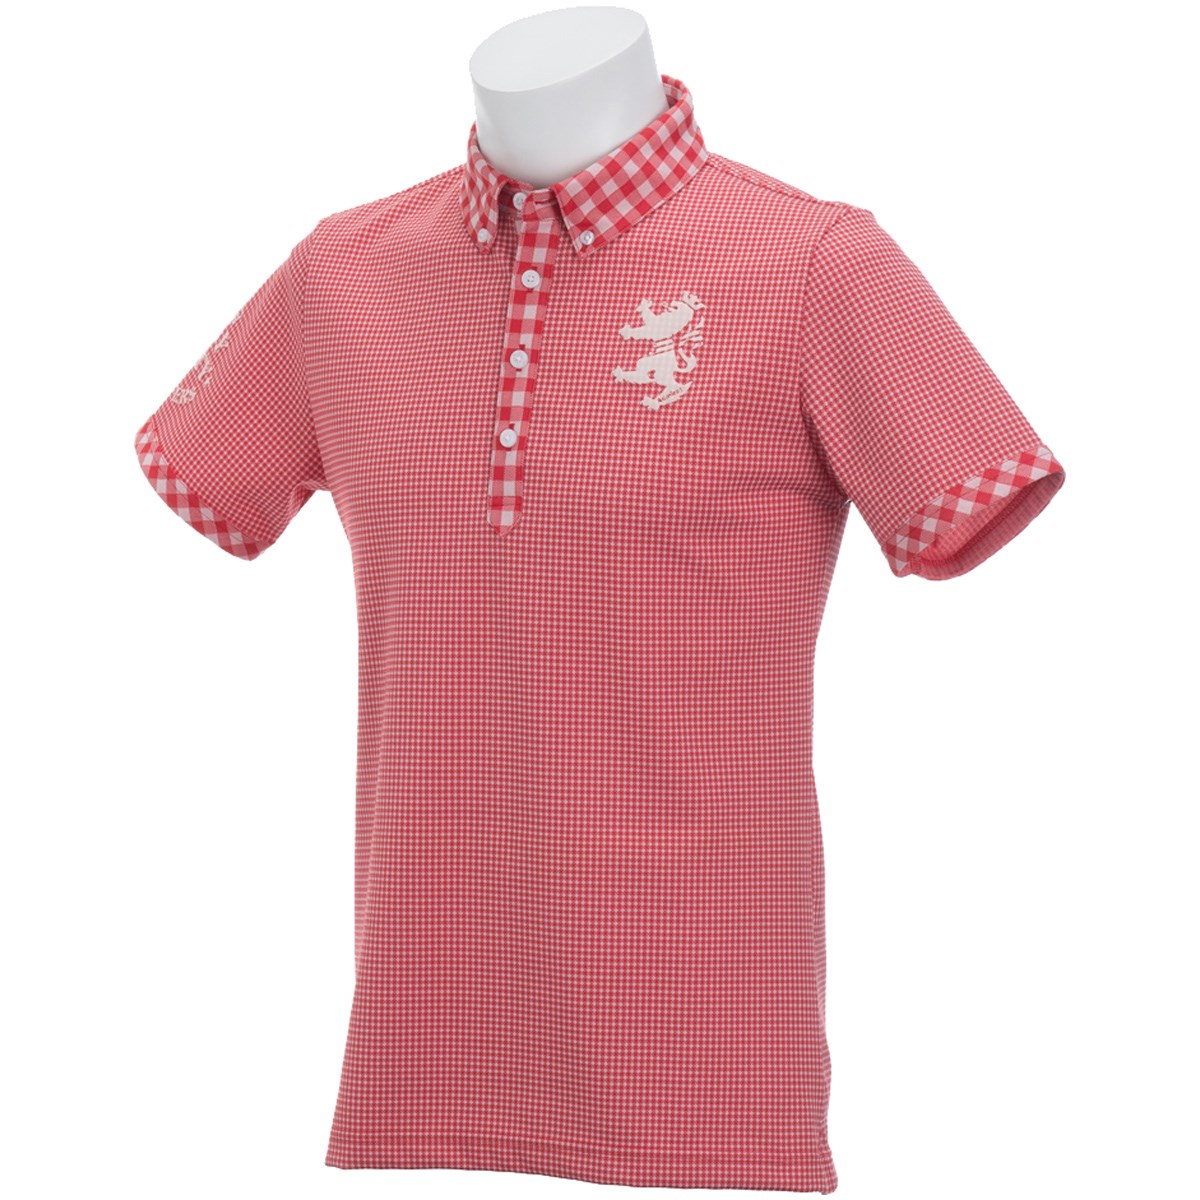  [アウトレット] [在庫限りのお買い得商品] アドミラル ギンガム ボタンダウン半袖ポロシャツ ゴルフウェア